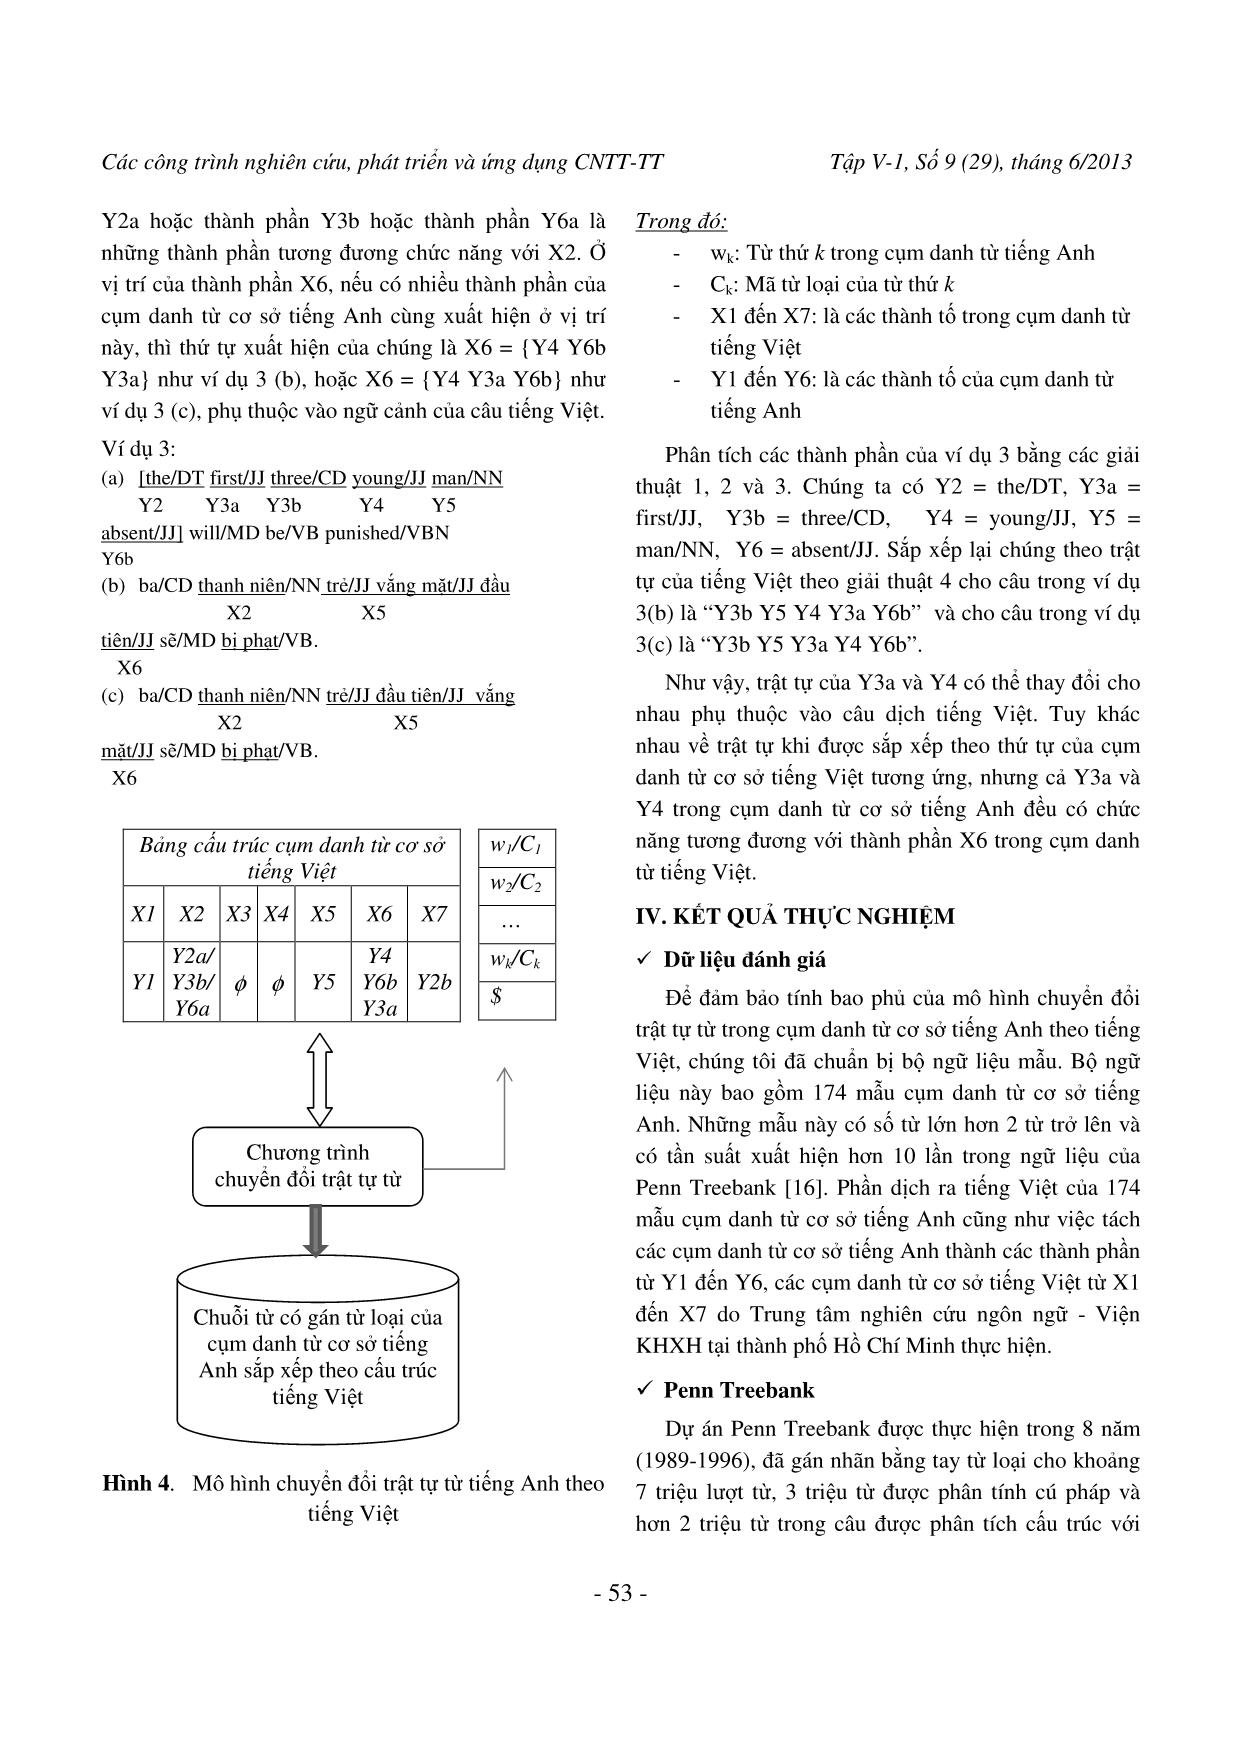 Chuyển đổi cây cú pháp cụm danh từ tiếng Anh theo tiếng Việt trang 6